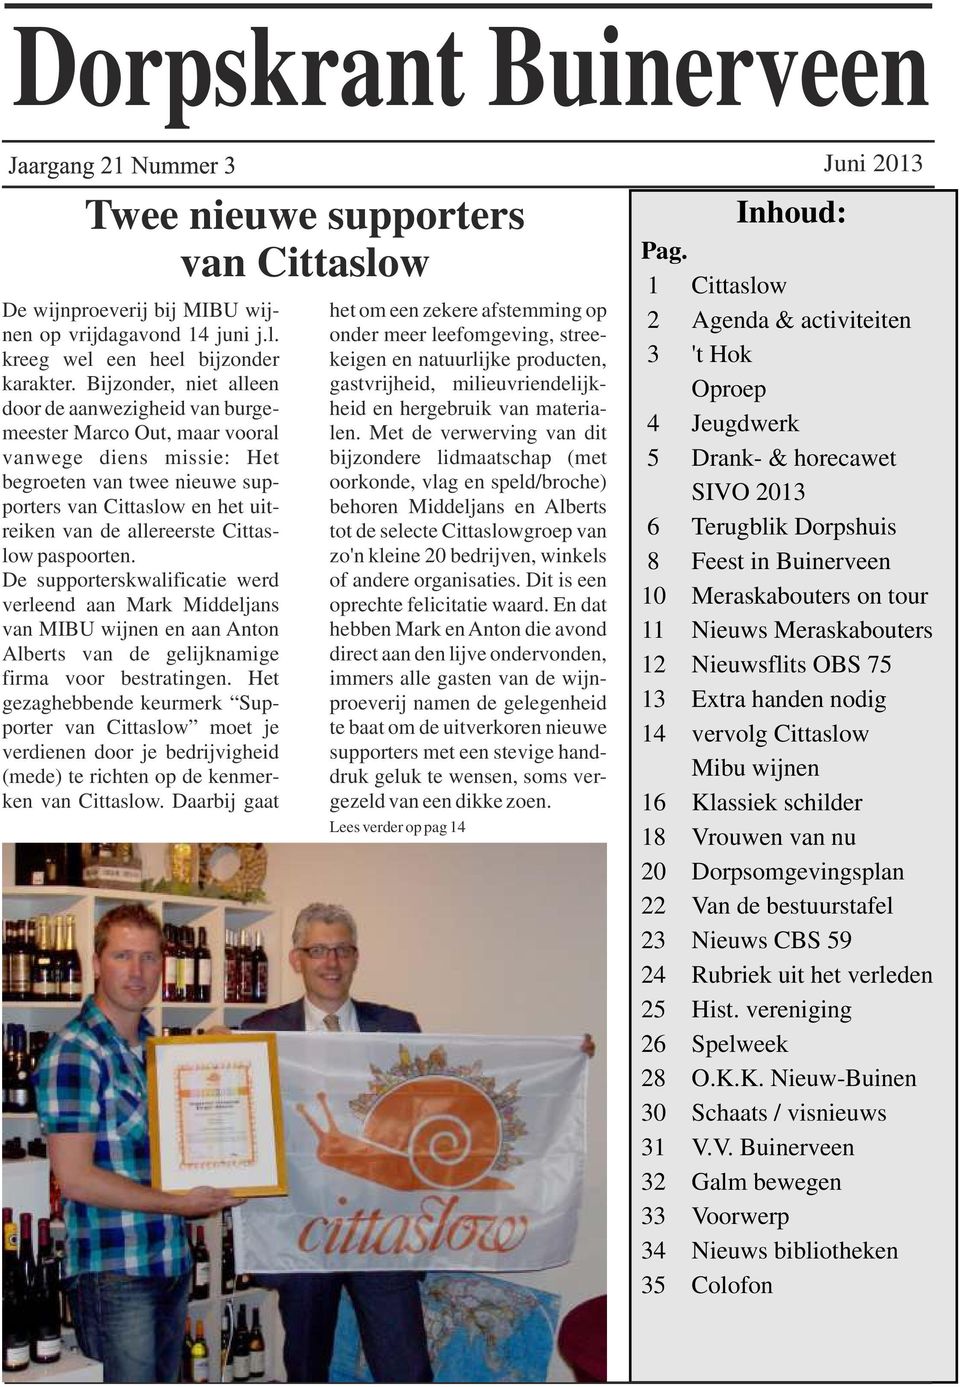 Cittaslow paspoorten. De supporterskwalificatie werd verleend aan Mark Middeljans van MIBU wijnen en aan Anton Alberts van de gelijknamige firma voor bestratingen.